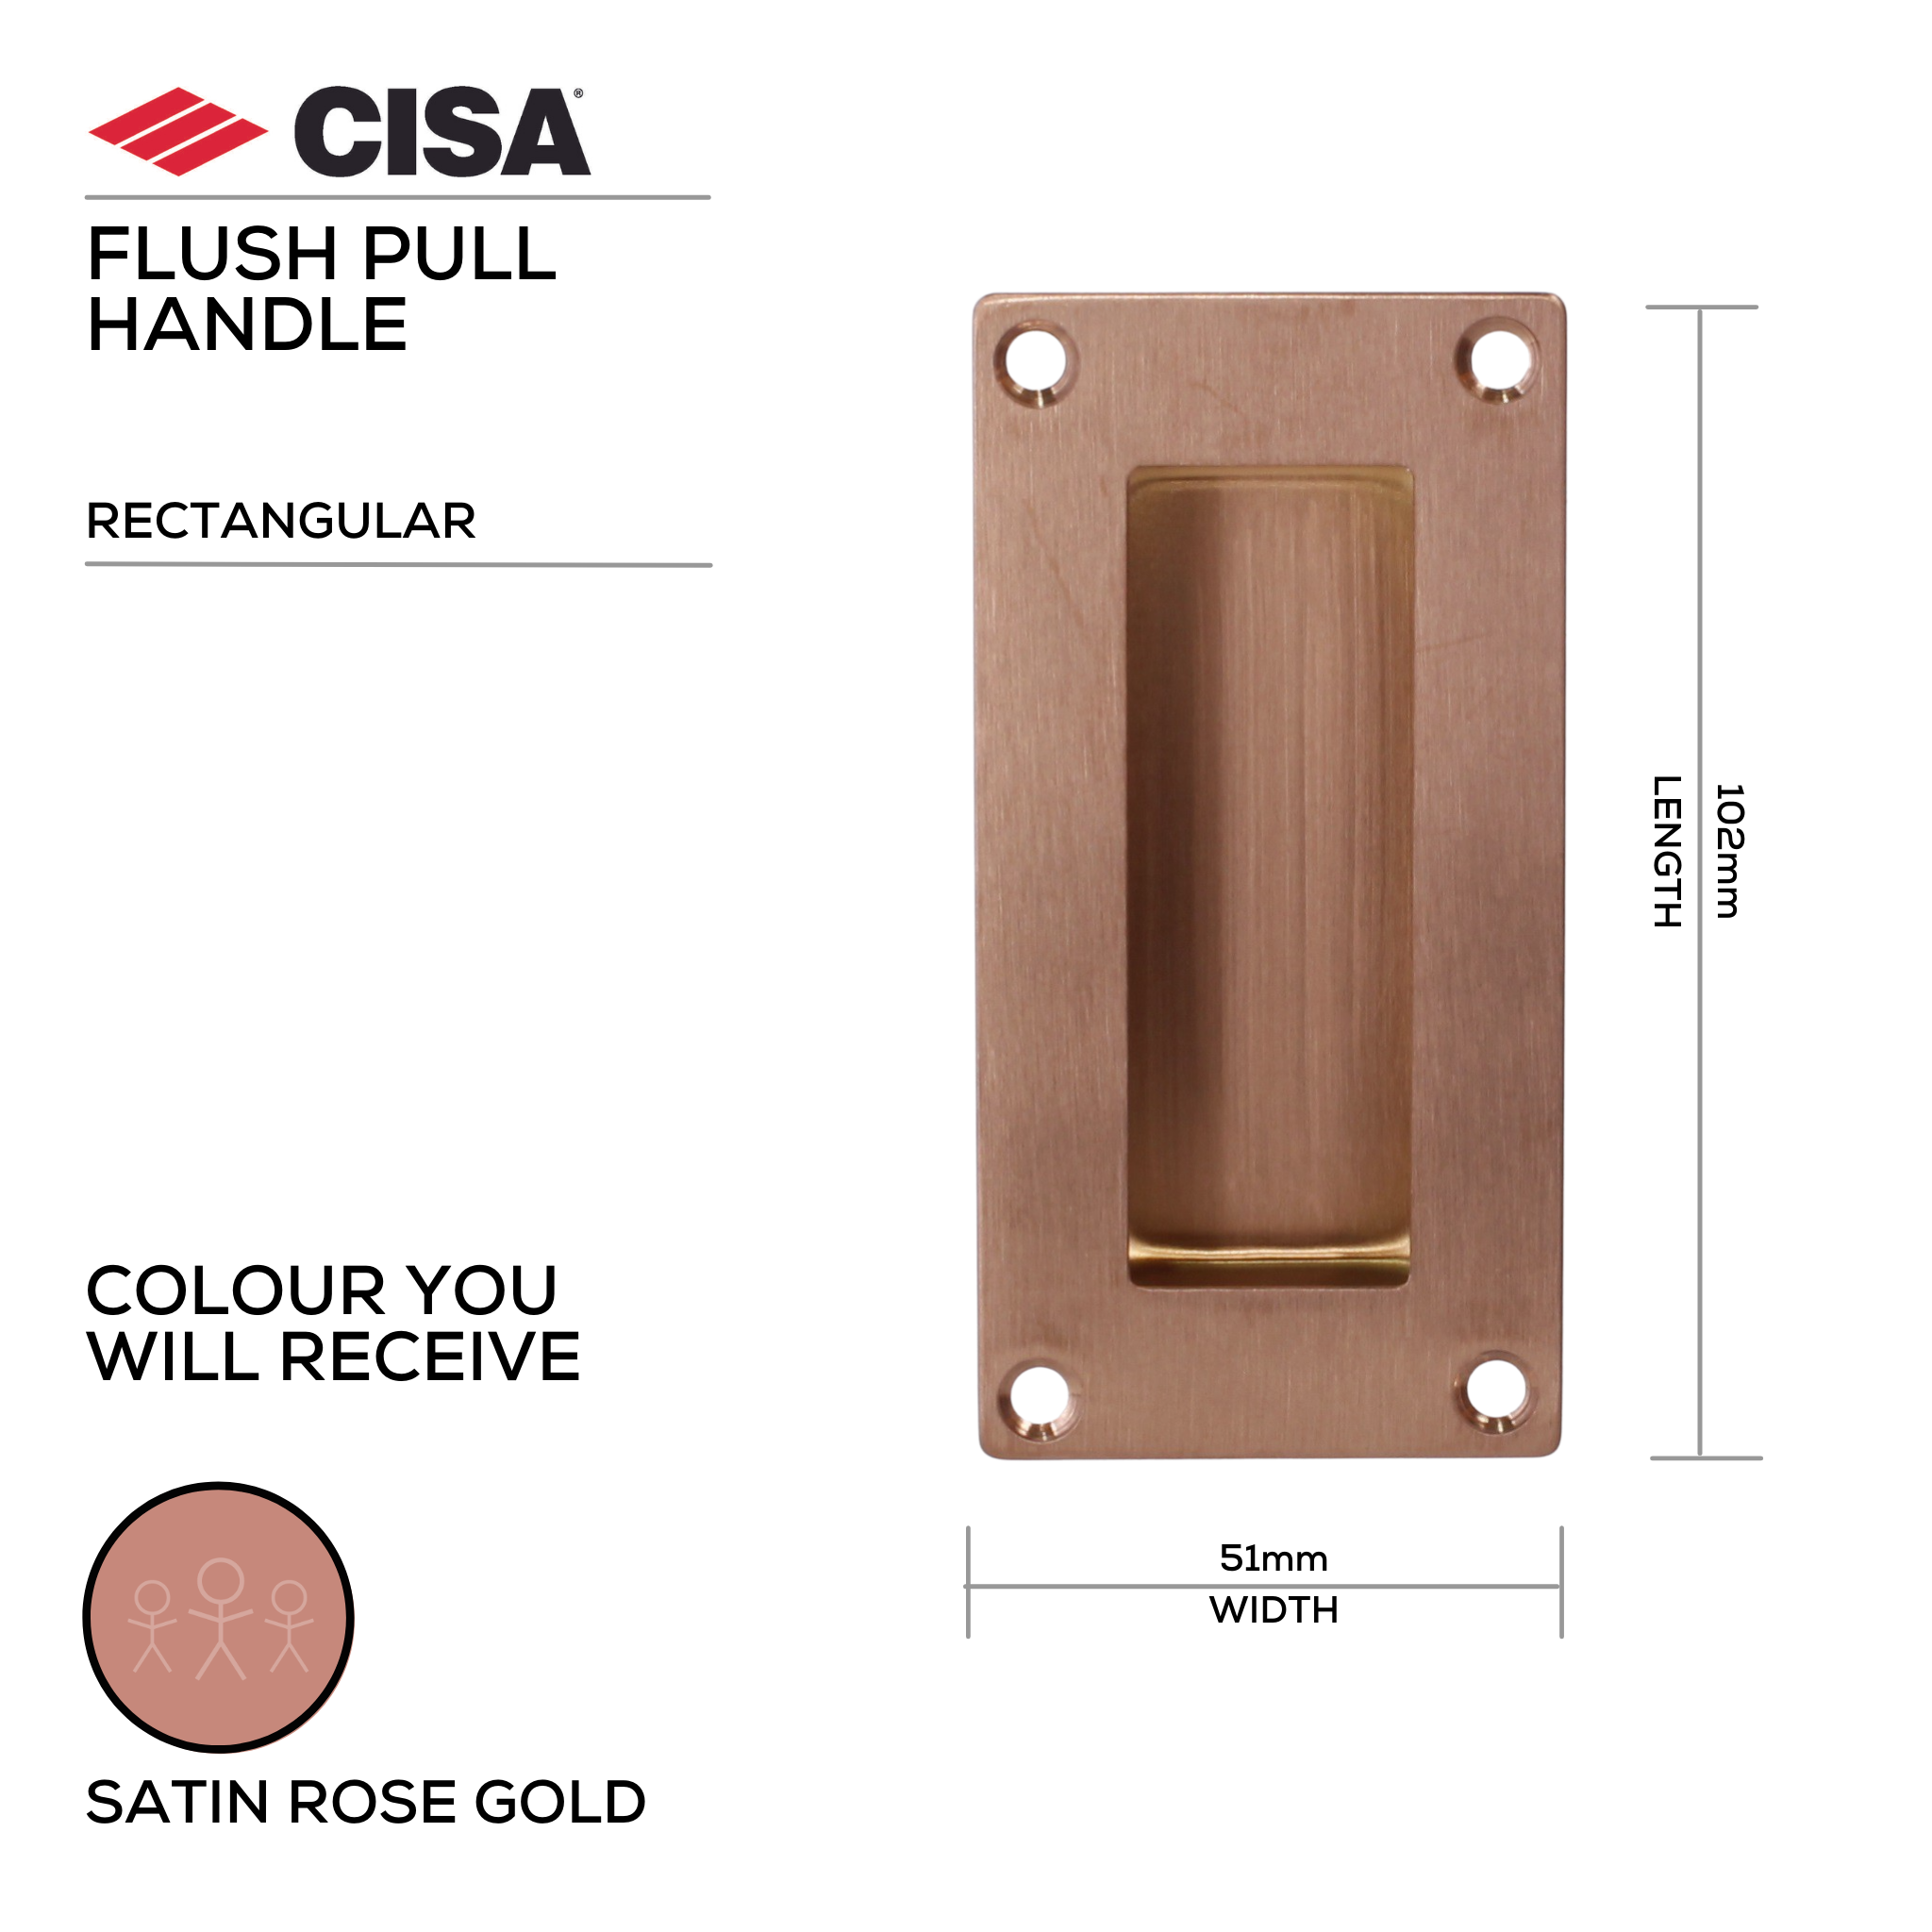 FP01.SRG, Flush Pull, Rectangular, 102mm (l) x 51mm (w), Satin Rose Gold, CISA